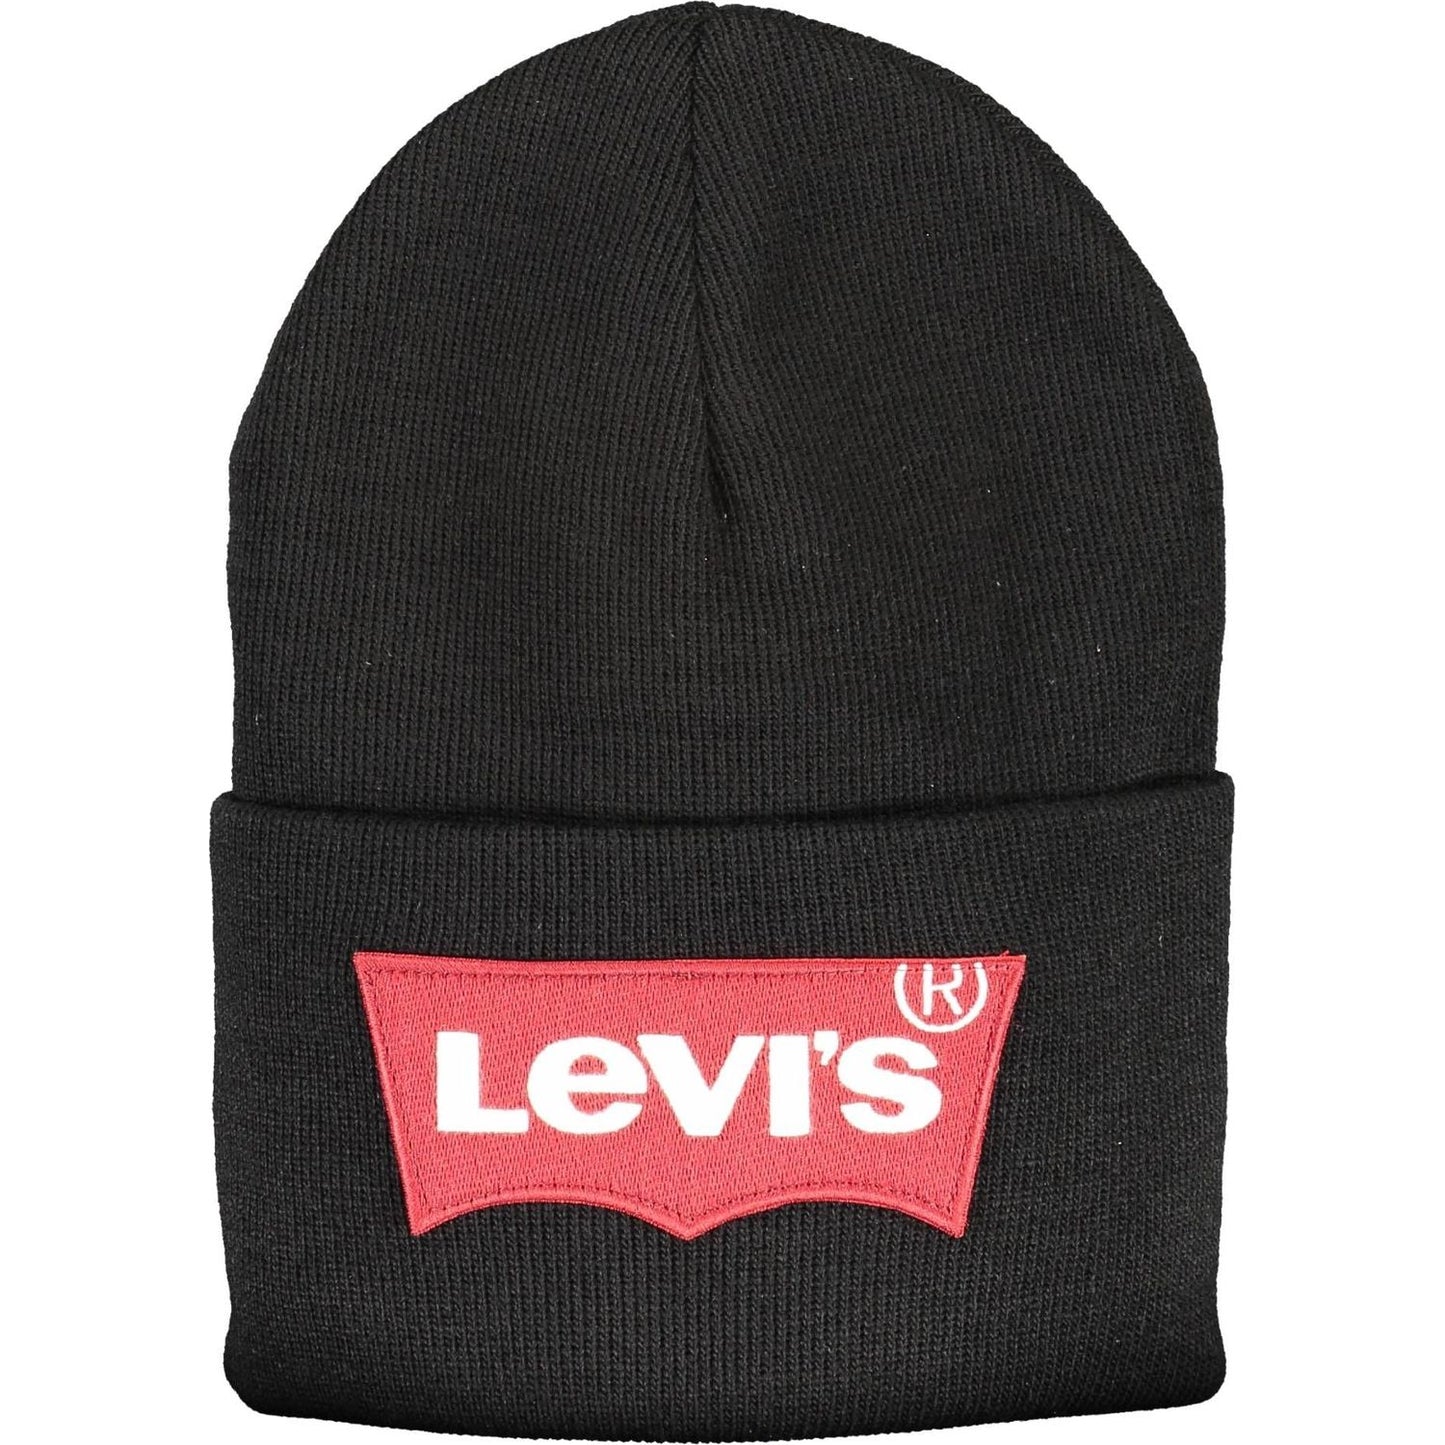 Levi's Sleek Black Acrylic Logo Cap sleek-black-acrylic-logo-cap